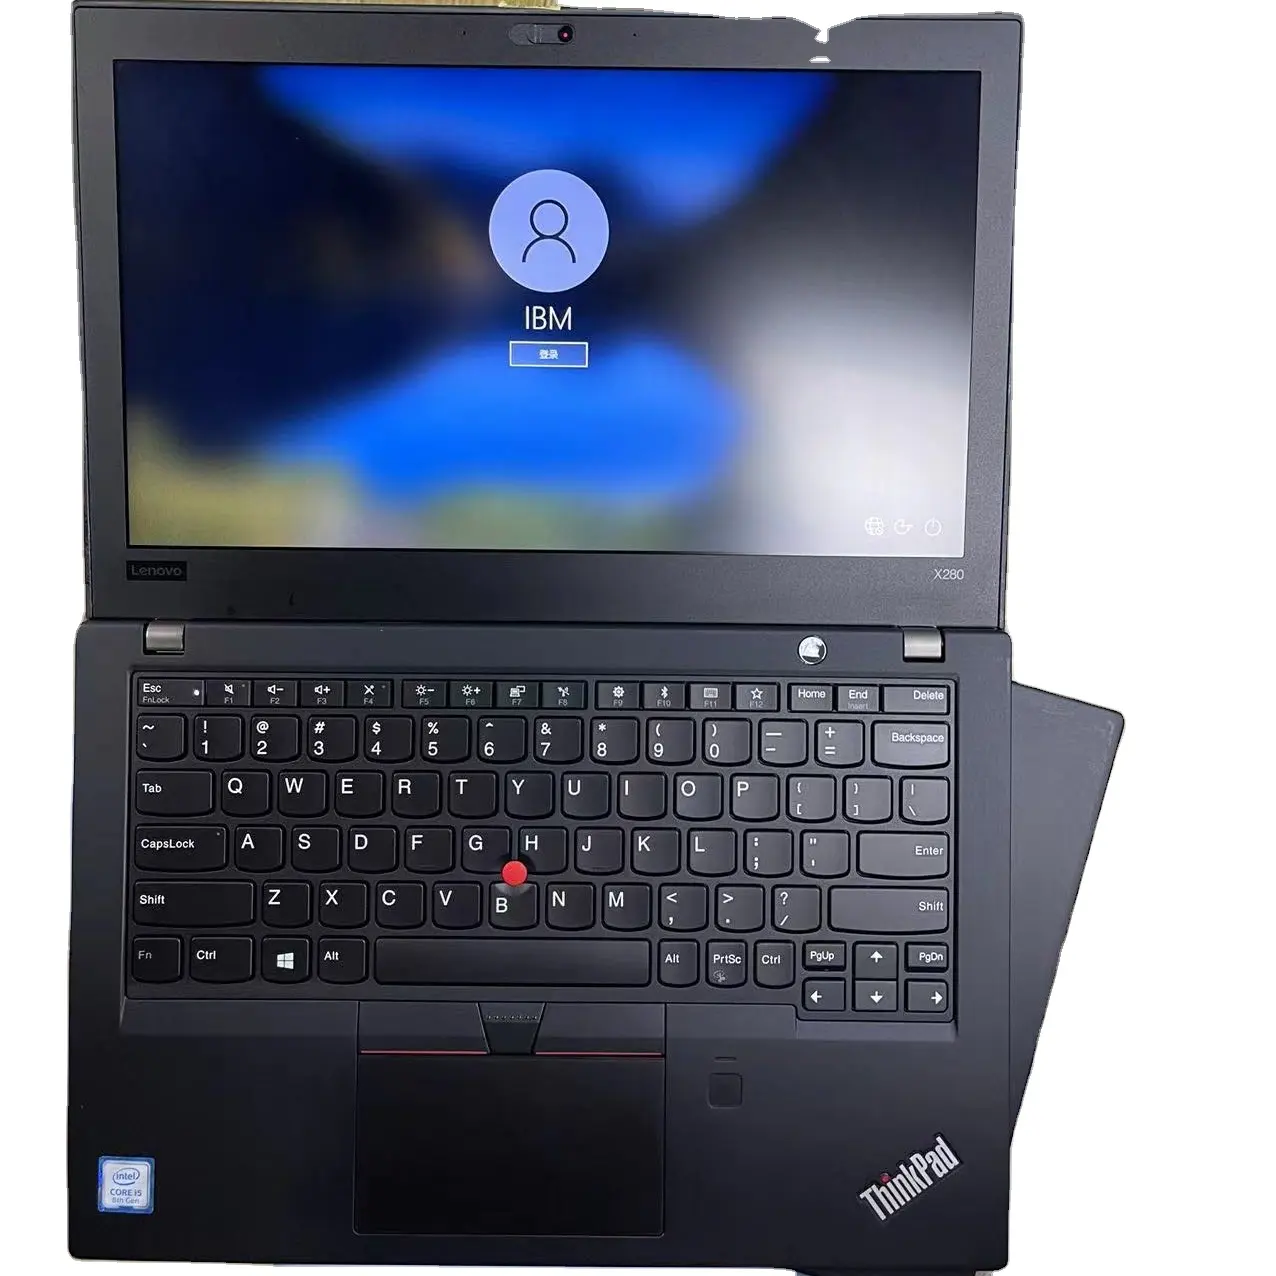 Ucuz toptan tedarik Lenovo ThinkPad Core i5 Win10 kullanılan dizüstü ikinci el dizüstü bilgisayar kullanılmış dizüstü bilgisayar fiyat